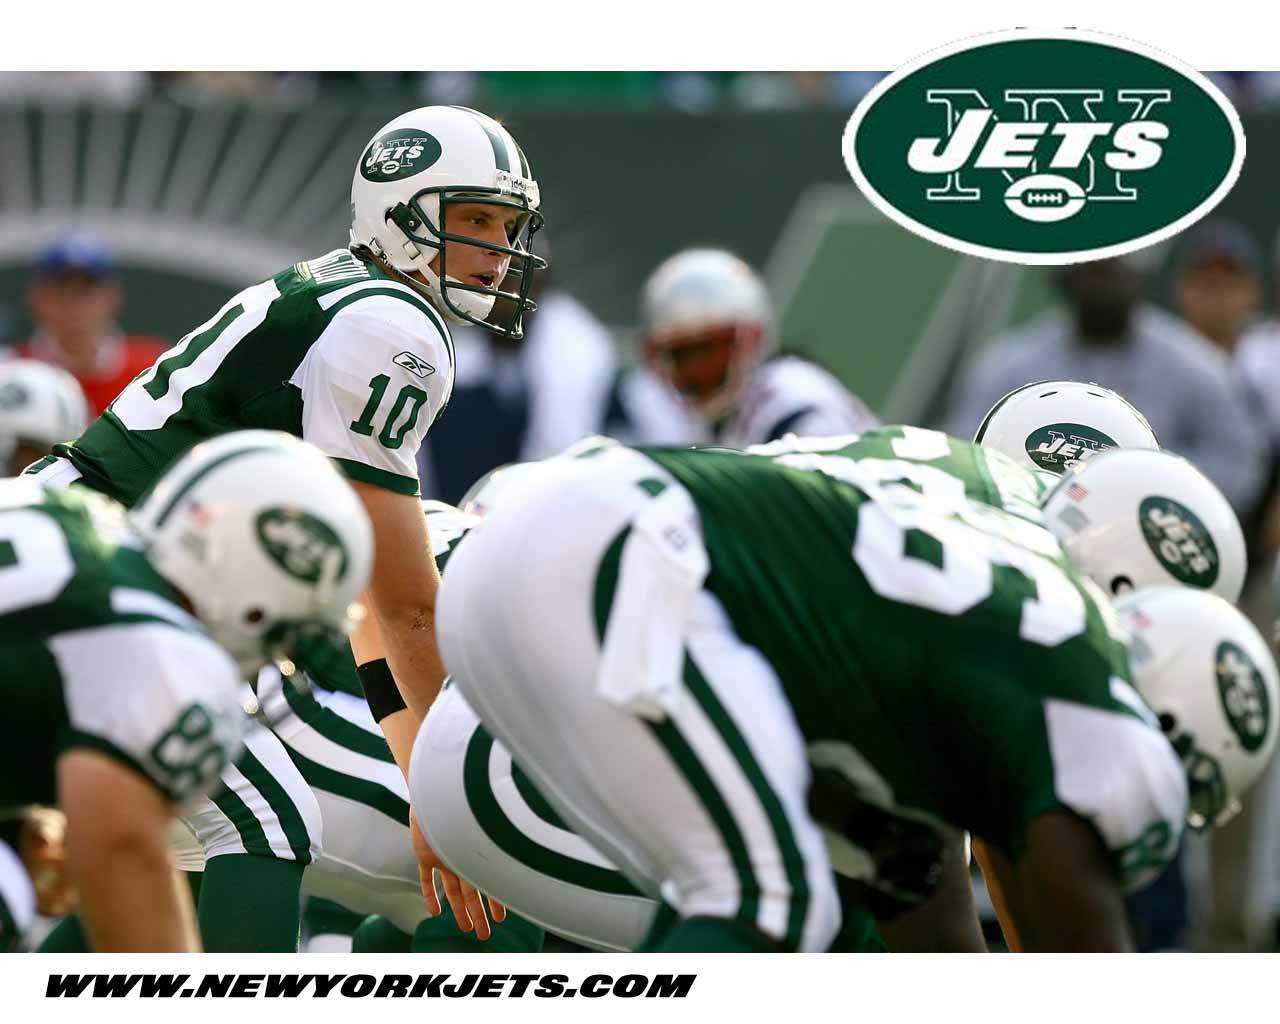  de New York Jets wallpaper Fondos de pantalla de New York Jets